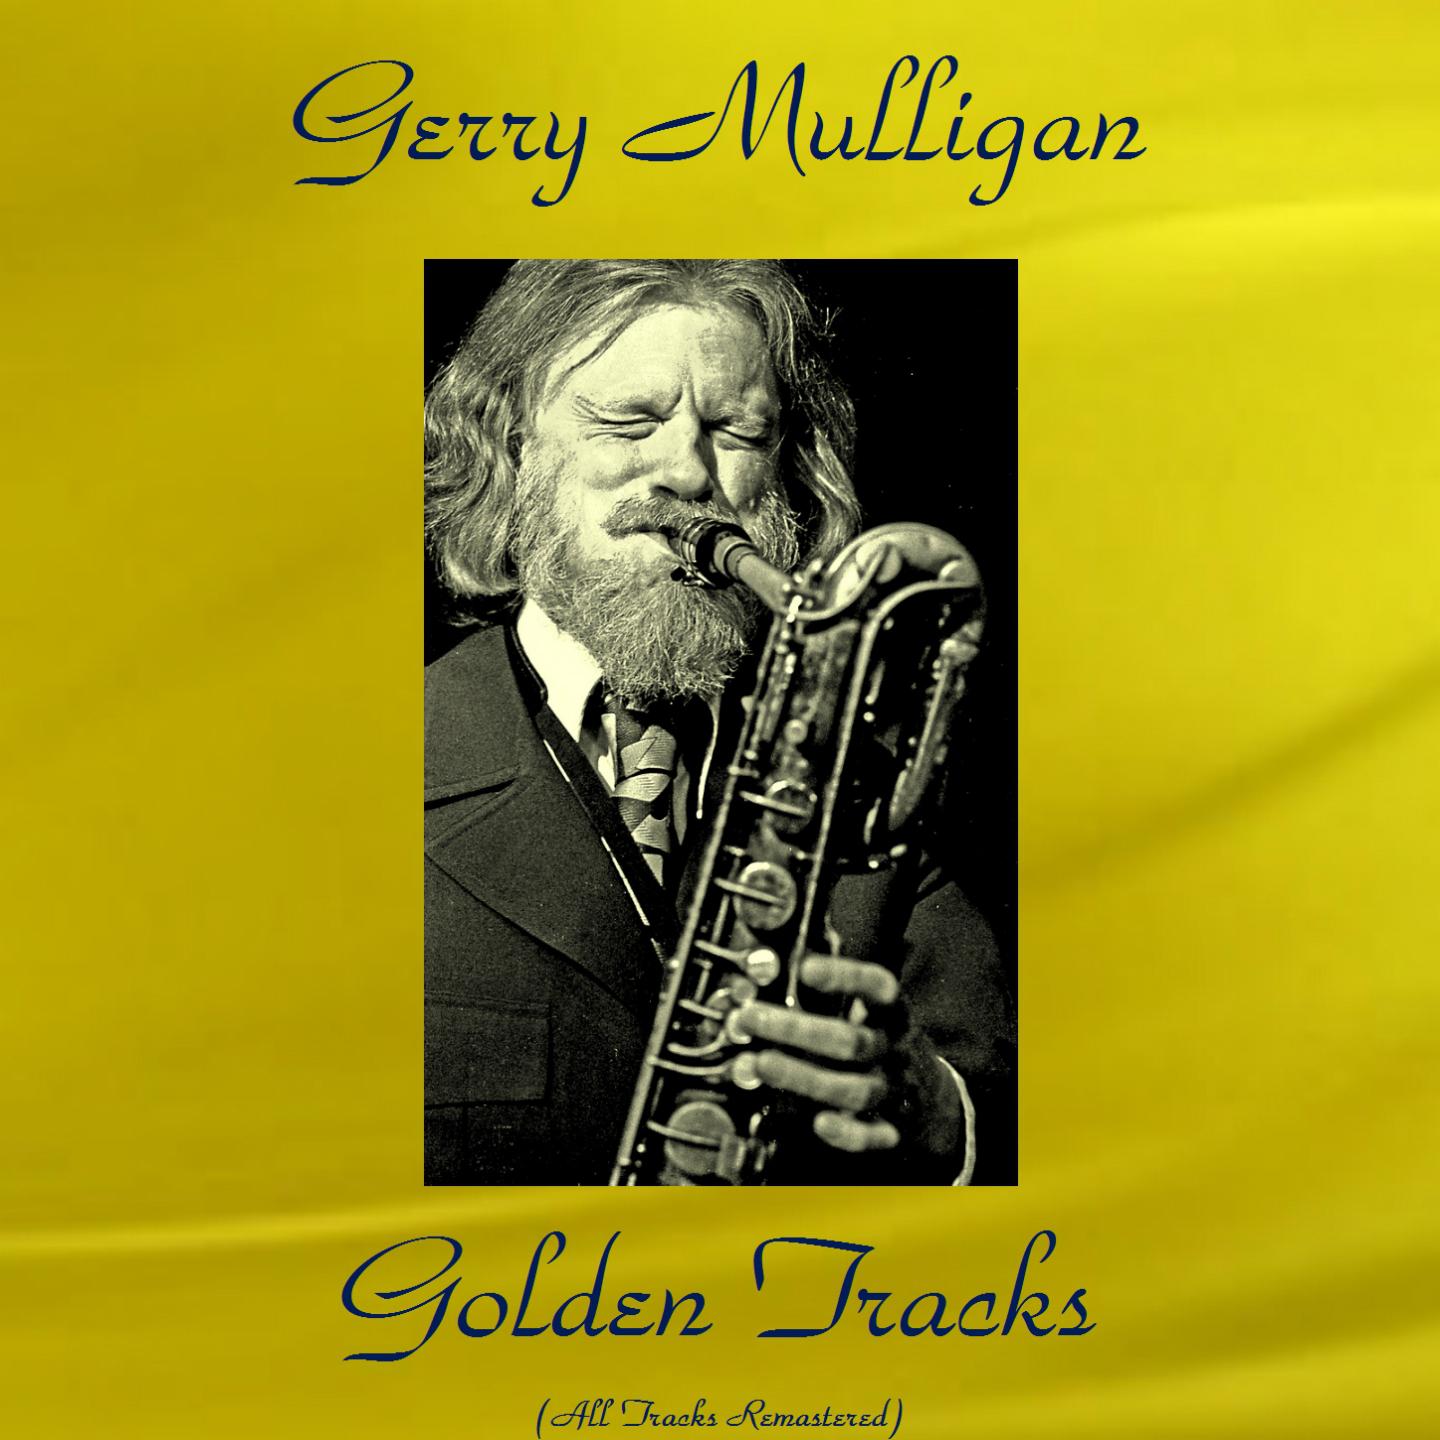 Gerry Mulligan Golden Tracks